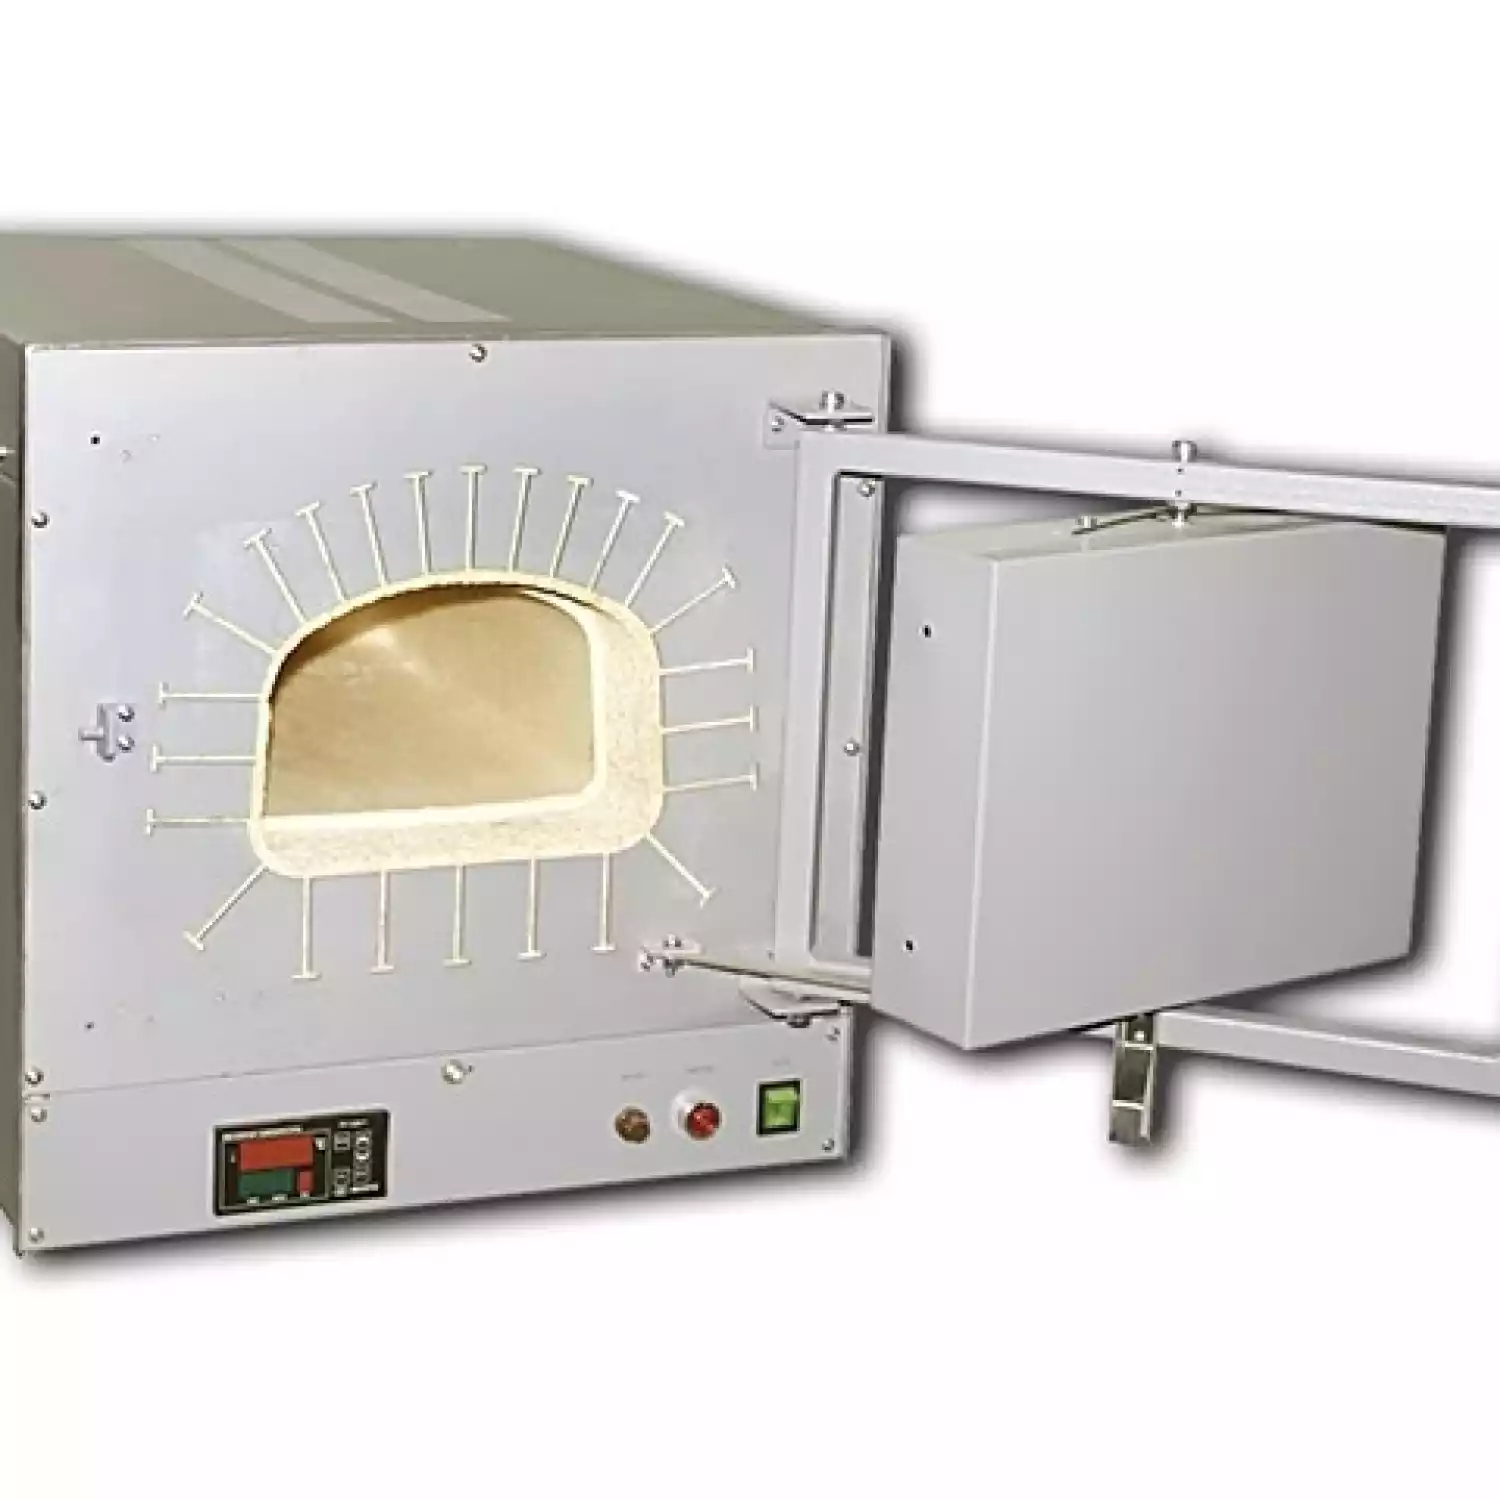 Печь ПМ-12М3 муфельная (1250°C, 8 л, терморегулятор РТ-1200, керамика) - 1